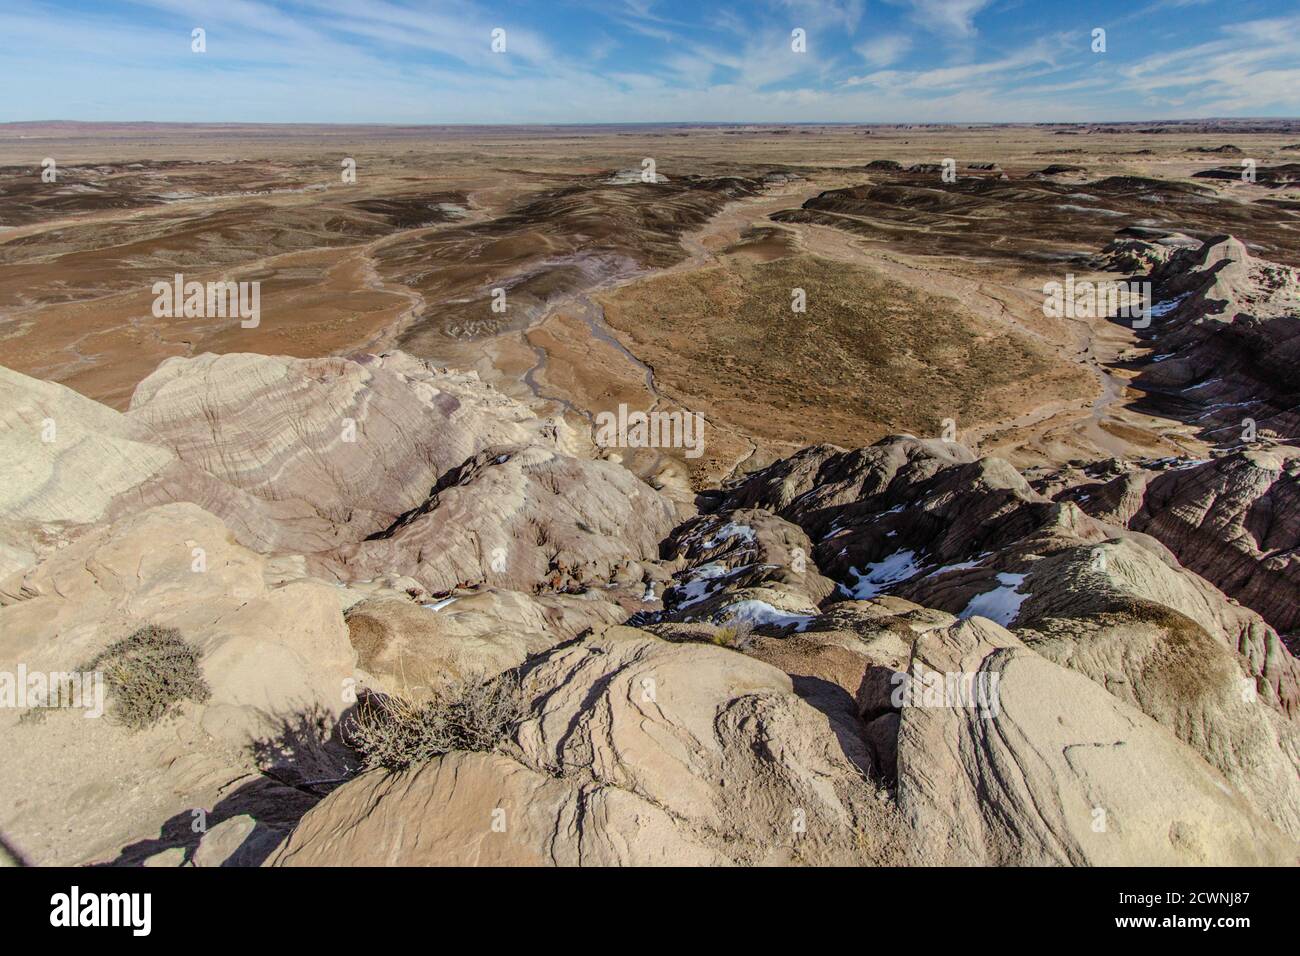 Vast Desert Wilderness Landscape. Barren desert of the American Southwest in Arizona. Stock Photo